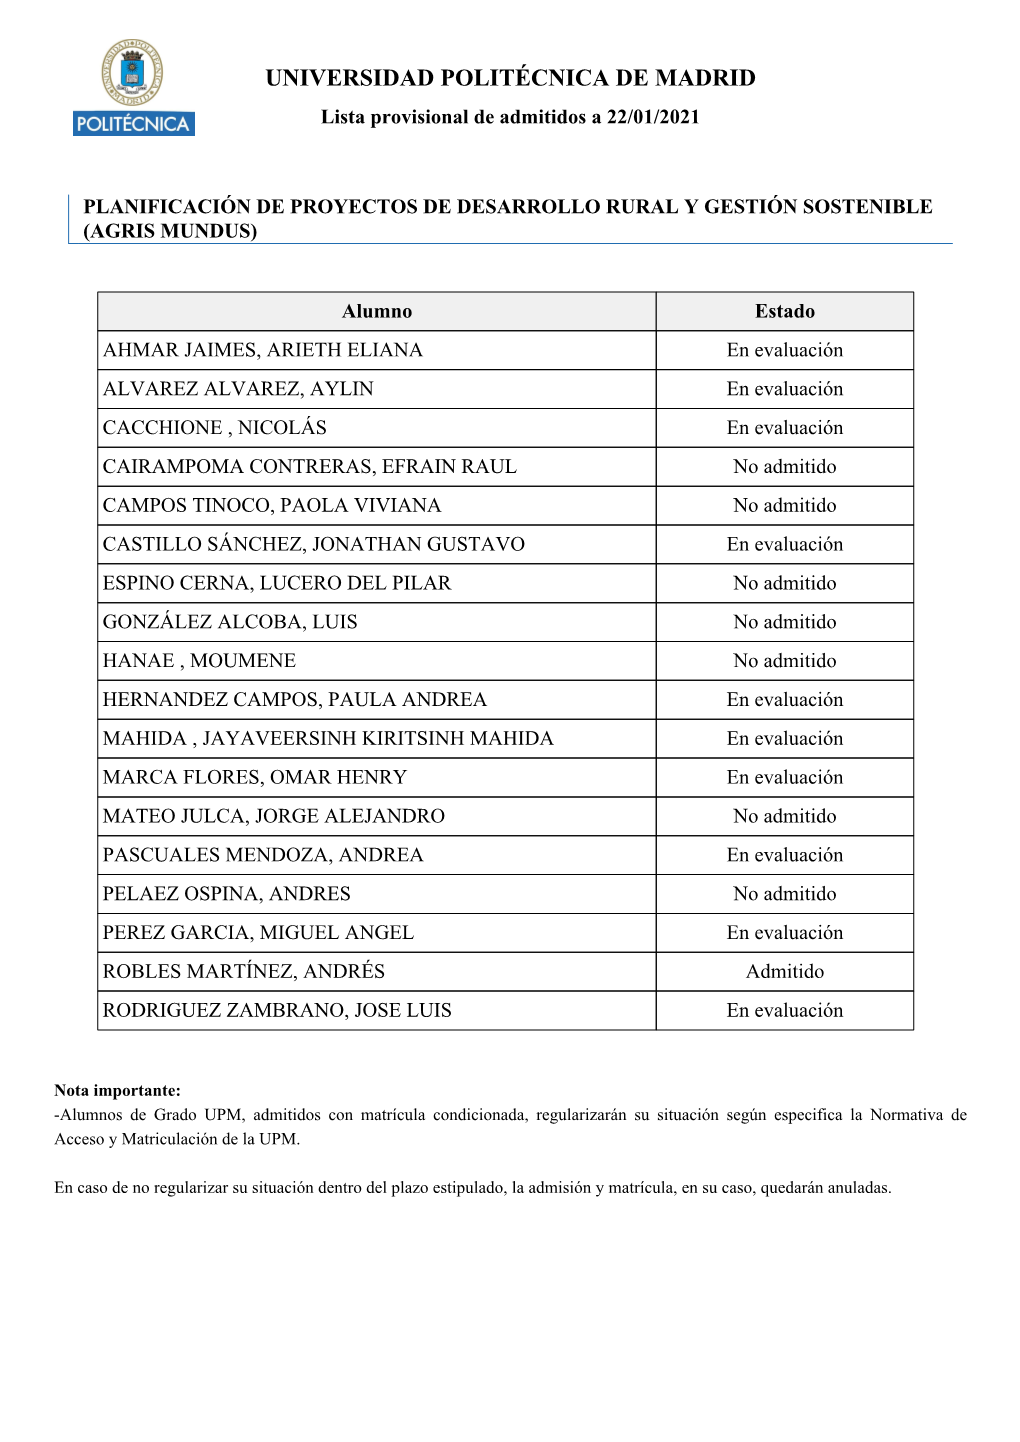 UNIVERSIDAD POLITÉCNICA DE MADRID Lista Provisional De Admitidos a 22/01/2021